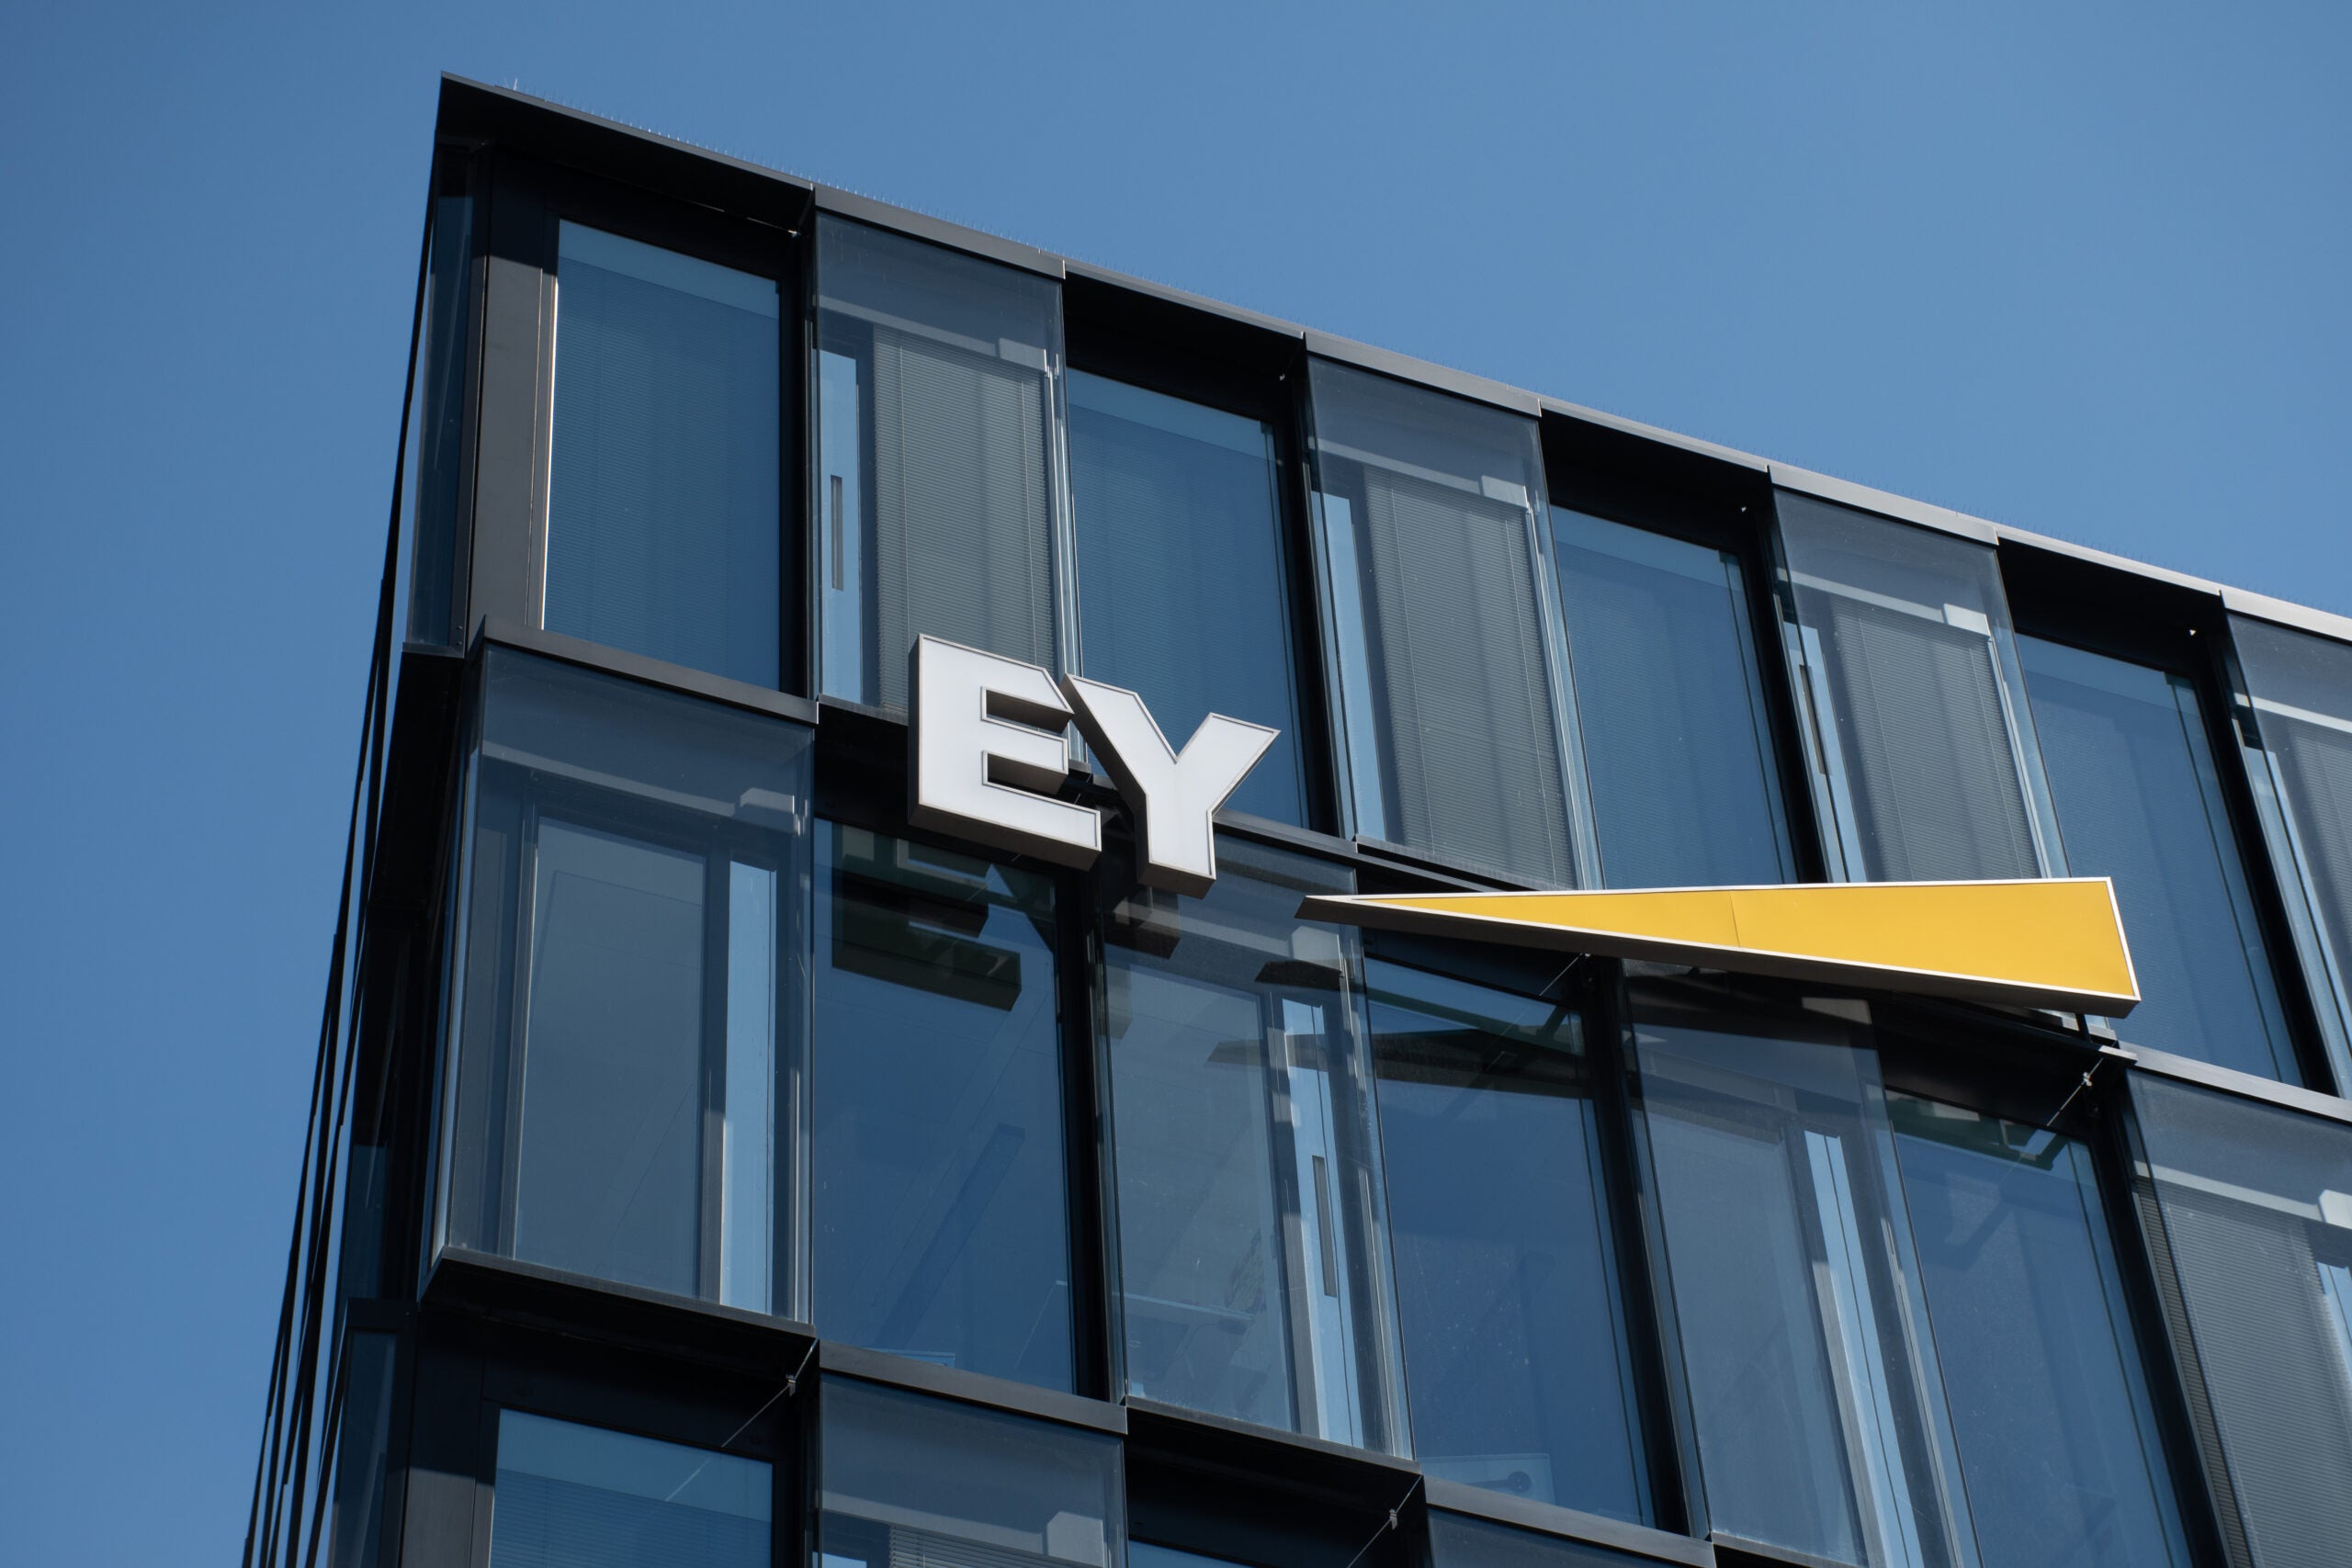 EY audit split rumours: how would it look in data?